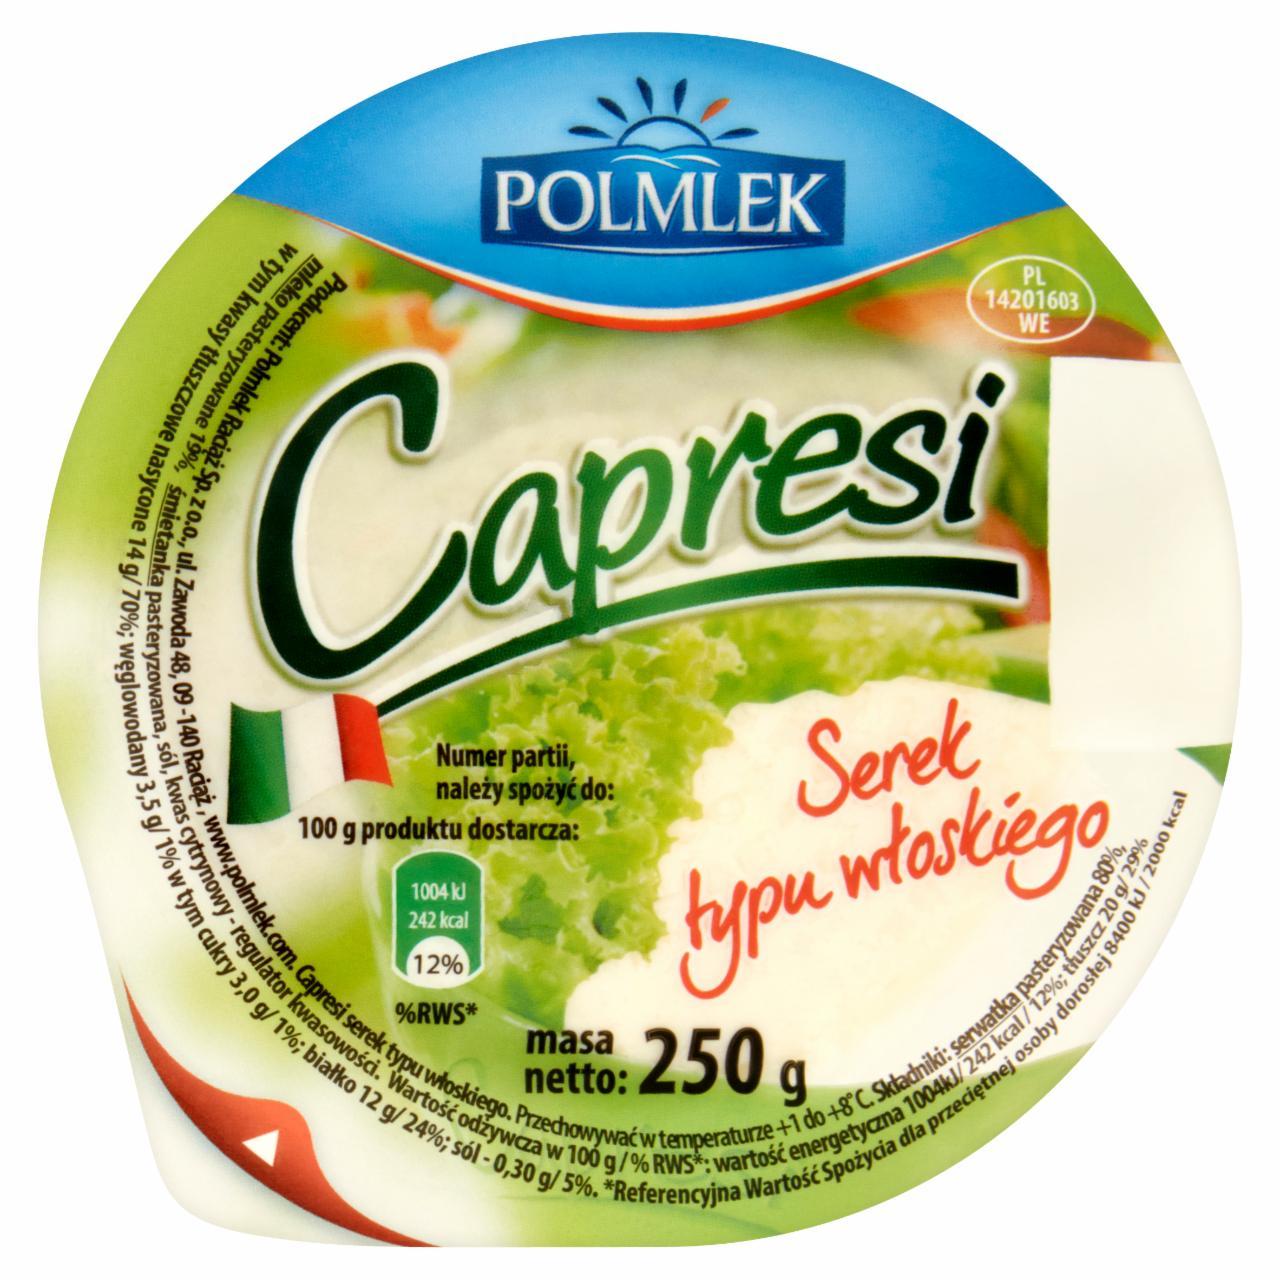 Zdjęcia - Polmlek Capresi Serek typu włoskiego 250 g